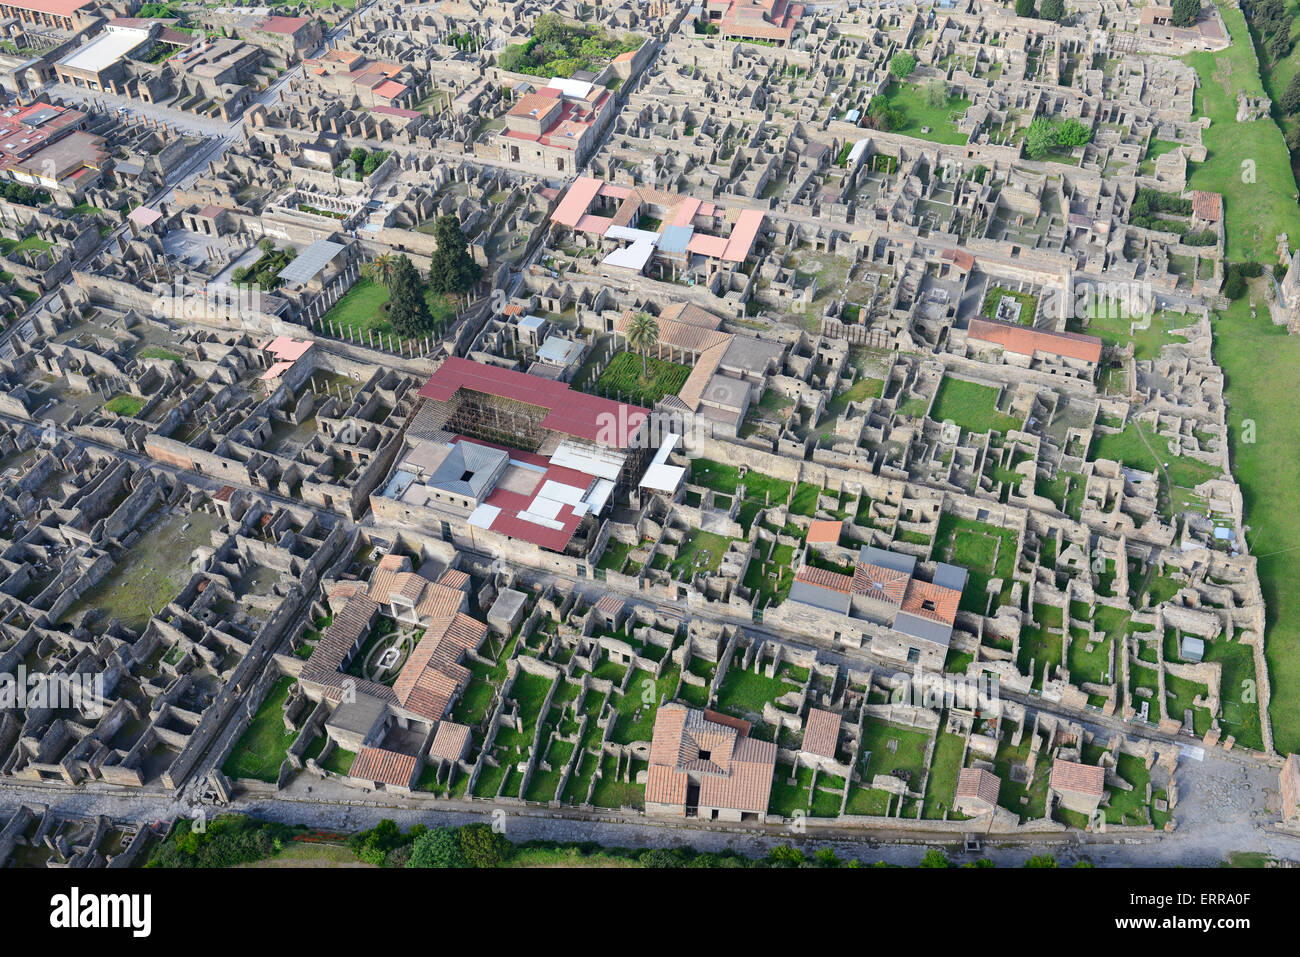 VISTA AEREA. Rovine dell'antica città di Pompei. Città metropolitana di Napoli, Campania, Italia. Foto Stock